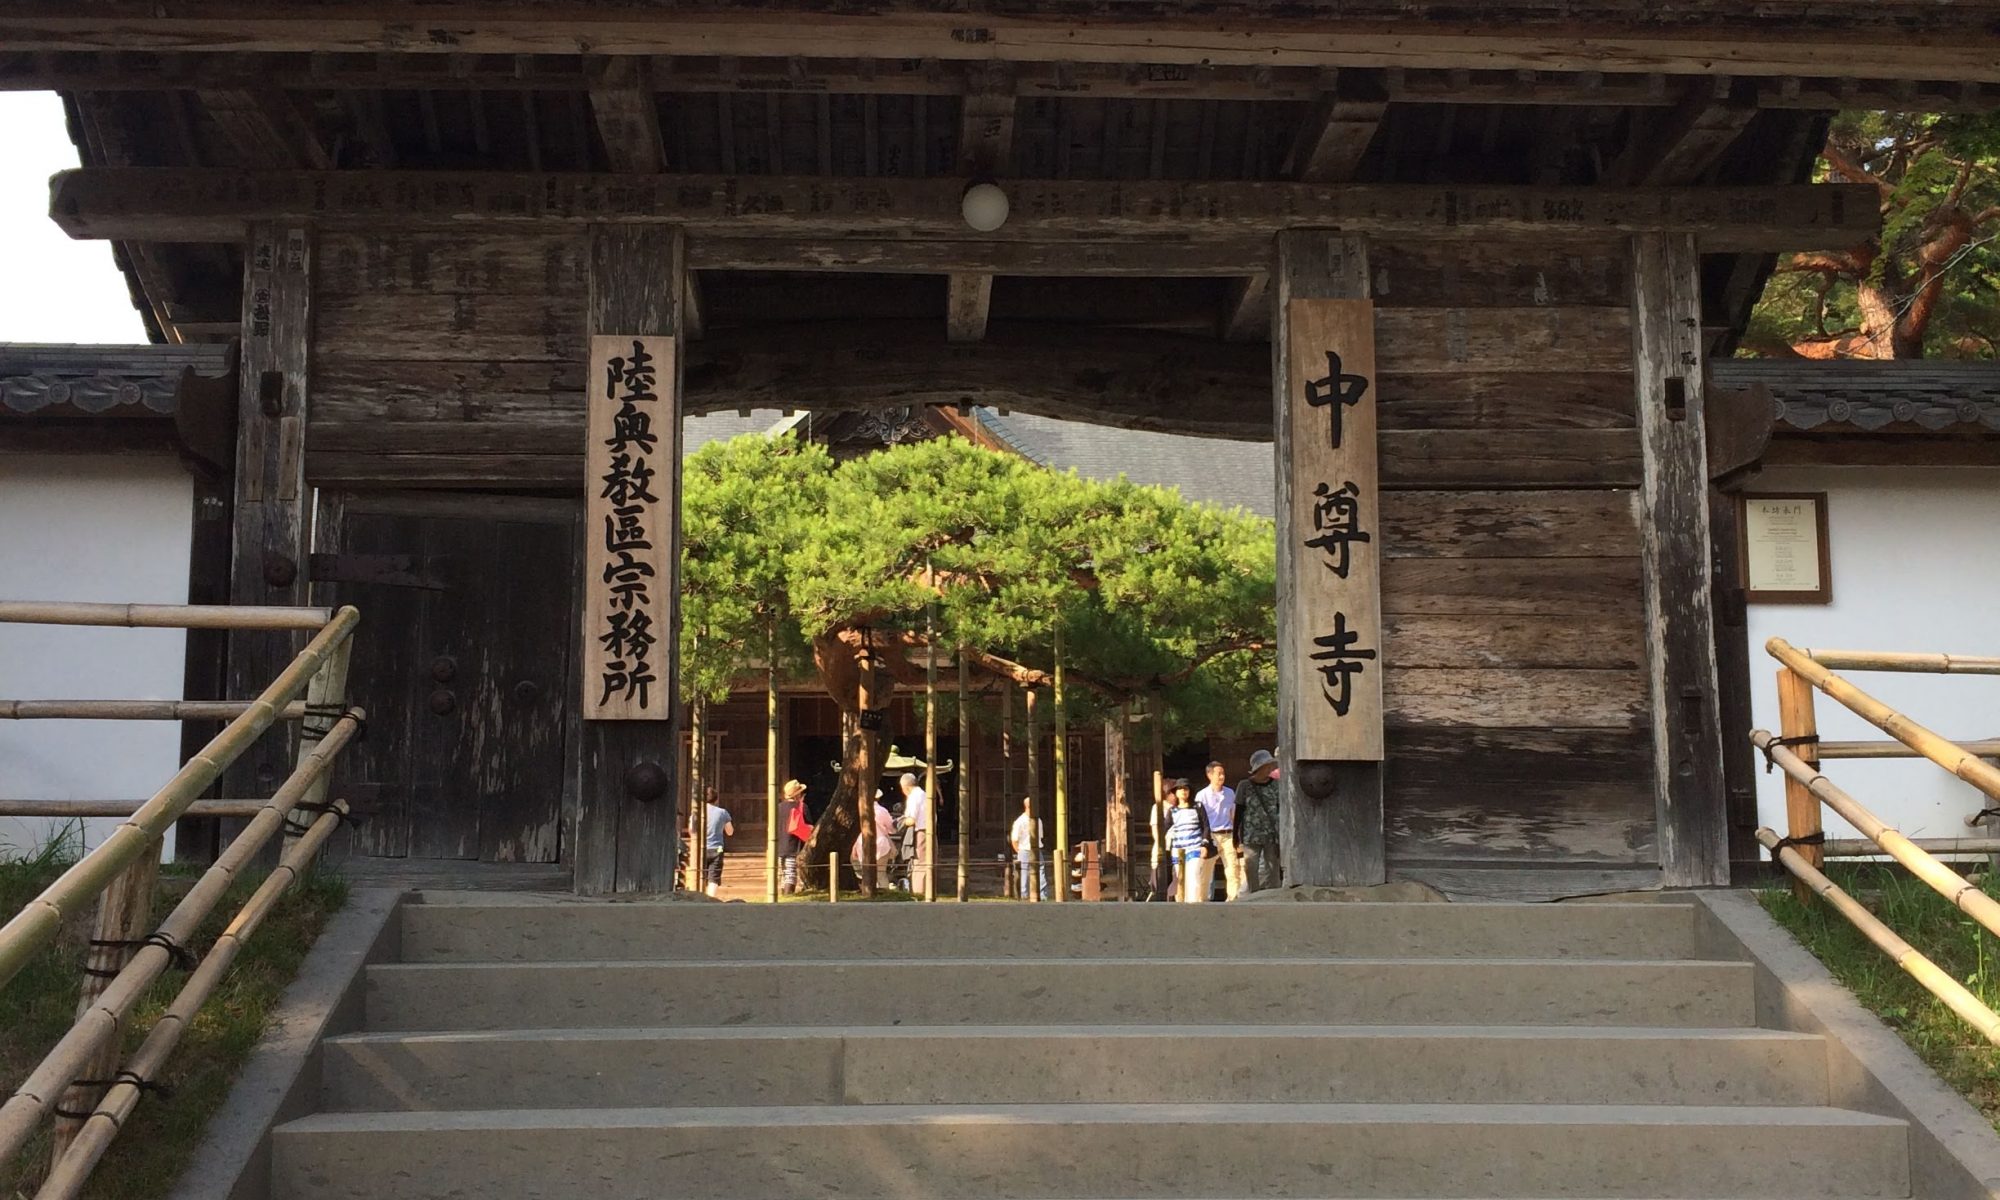 平泉の世界 平泉の文化遺産 中尊寺 おでかけブログツアー